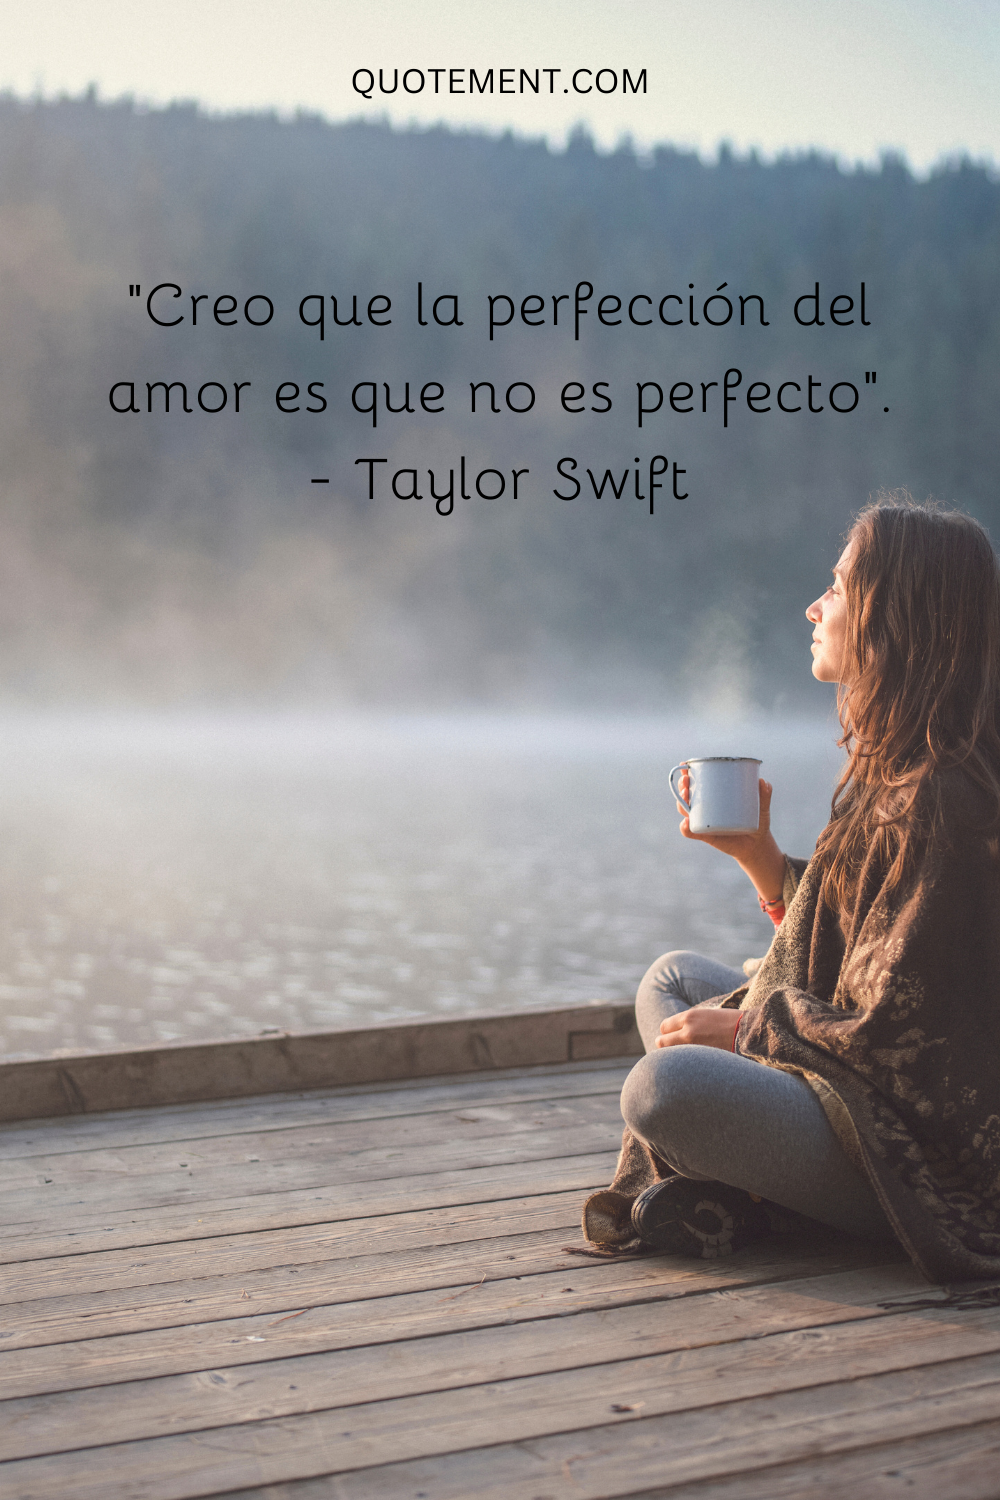 Creo que la perfección del amor es que no es perfecto